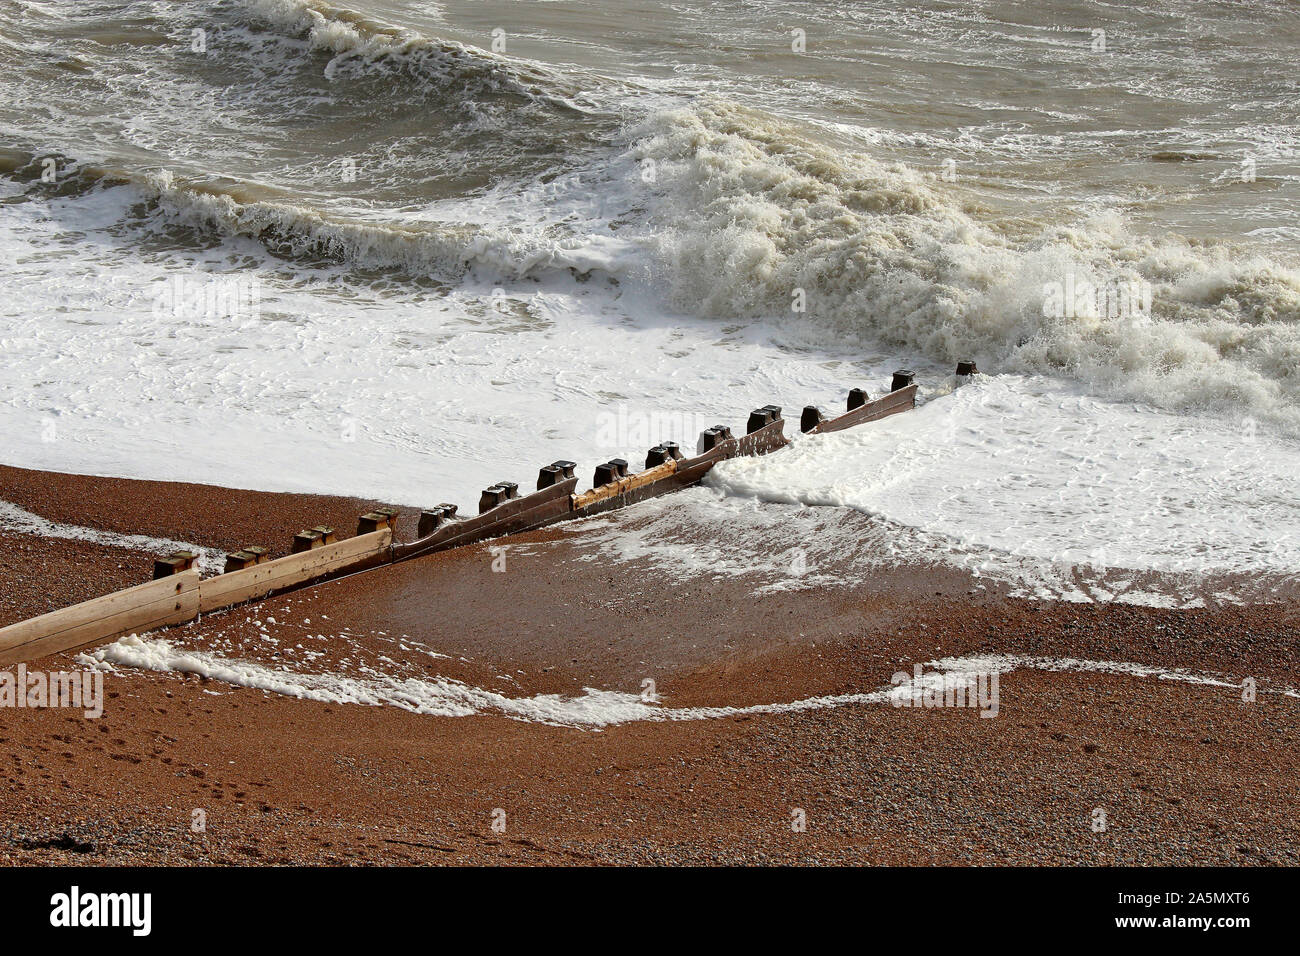 Diese hölzernen Buhnen dienen als Verteidigung gegen die erodierende Wirkung von Wellen auf dem Kiesstrand. Foto in Bexhill, East Sussex, England. Stockfoto